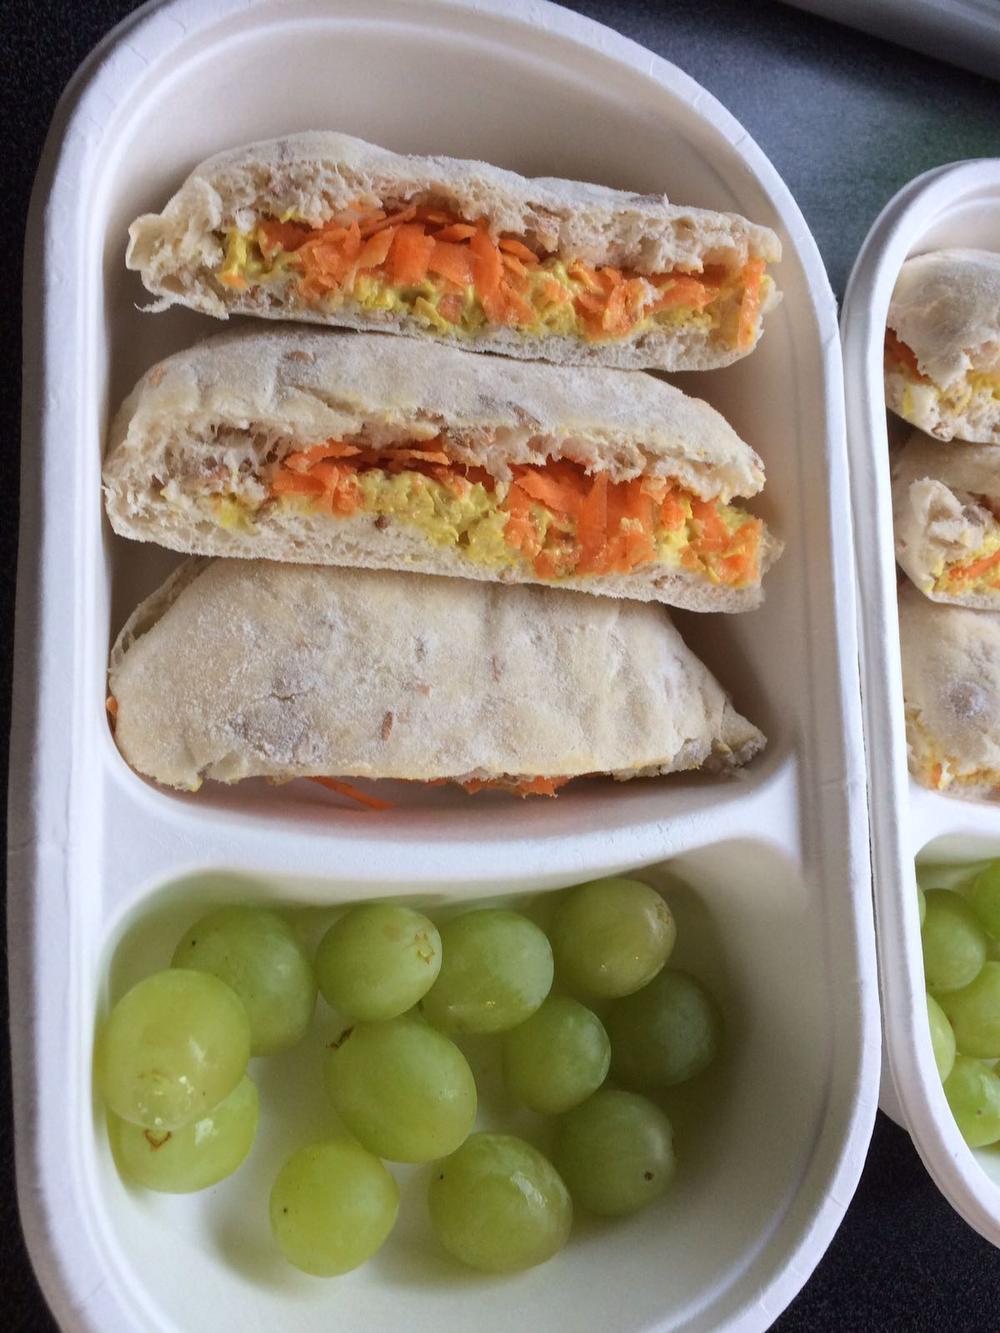 Rollegemnaar levert gezonde broodmaaltijden op school